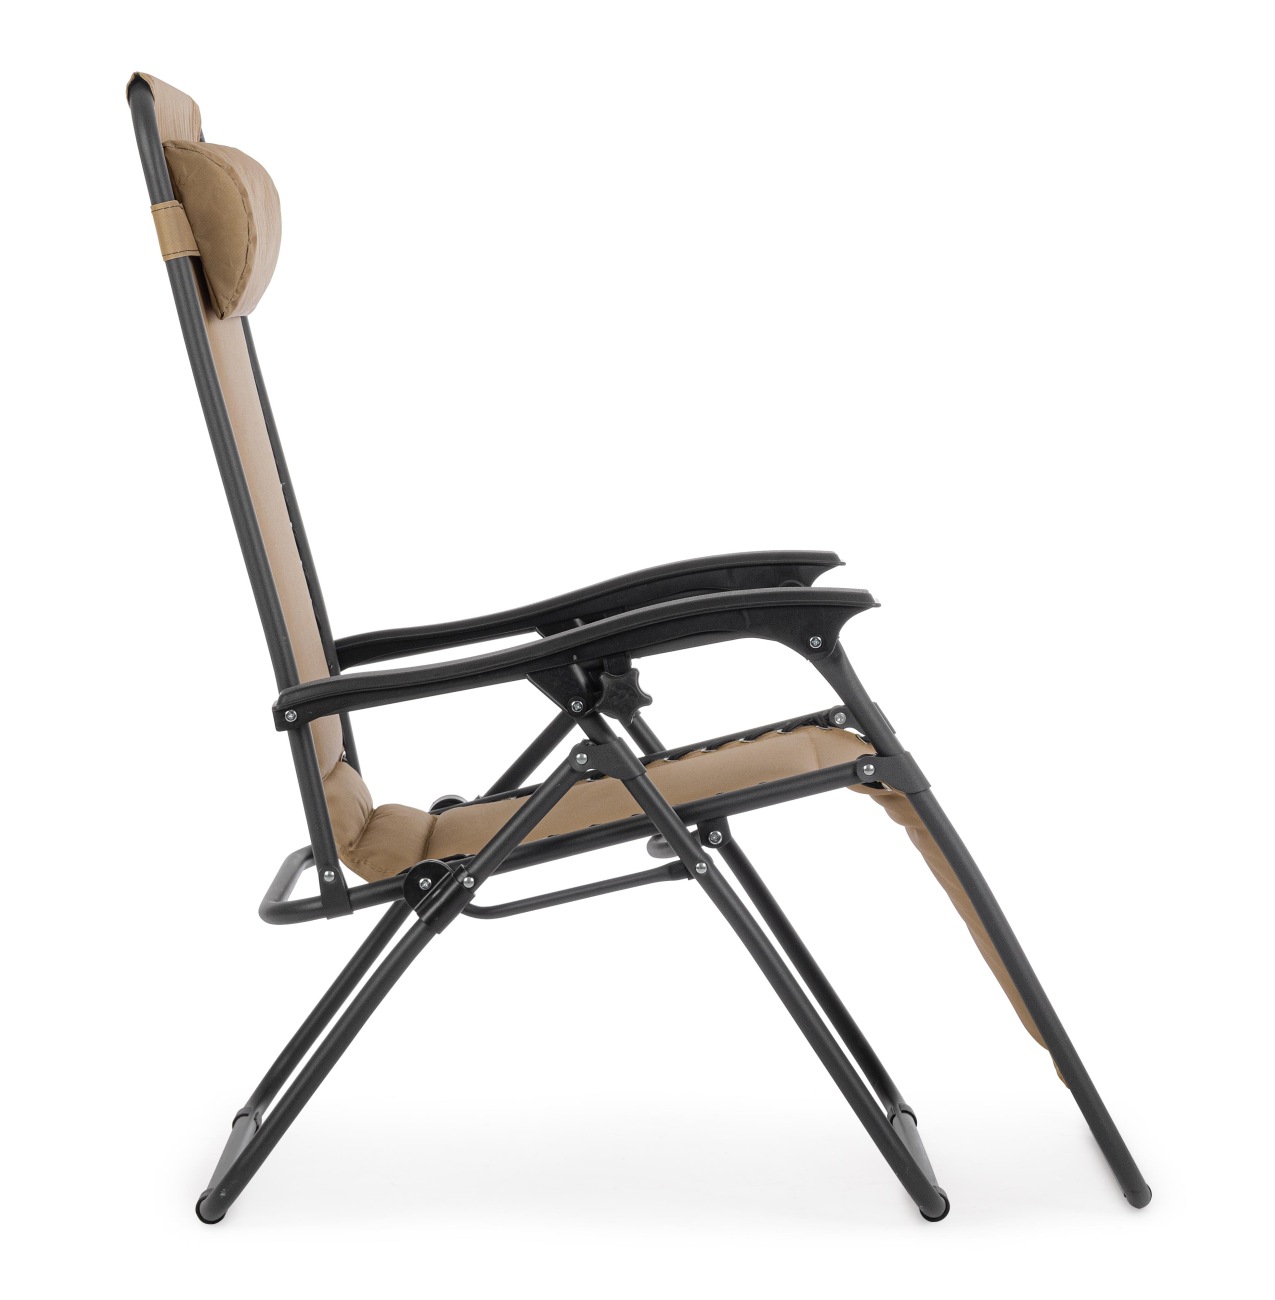 Der Loungesessel Wayne überzeugt mit seinem modernen Design. Gefertigt wurde er aus Textilene, welches einen Beigen Farbton besitzt. Das Gestell ist aus Metall und hat eine schwarze Farbe. Der Sessel ist klappbar.